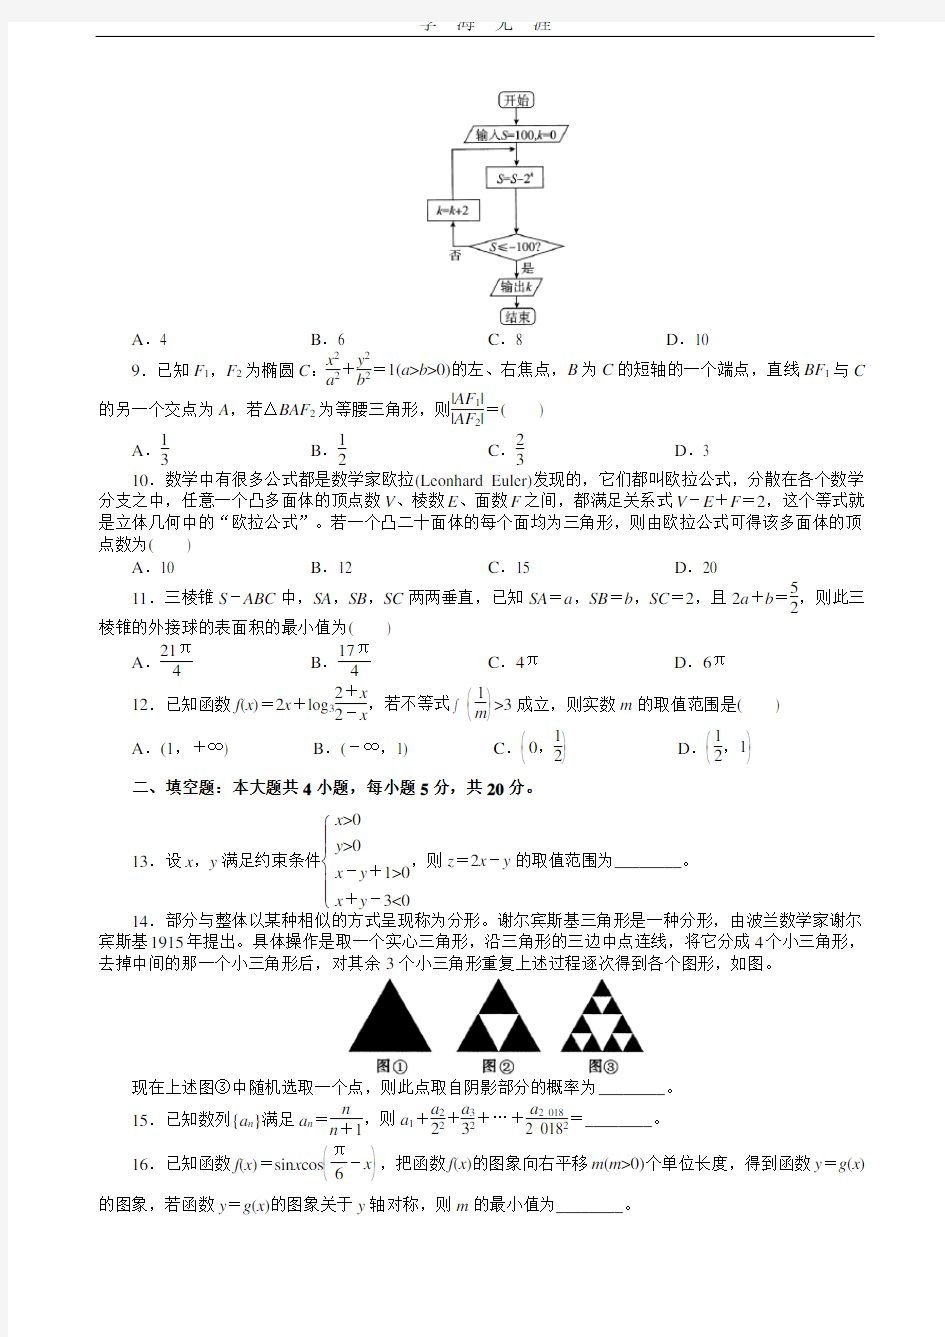 2020最新高考文科数学押题卷(带答案).pdf